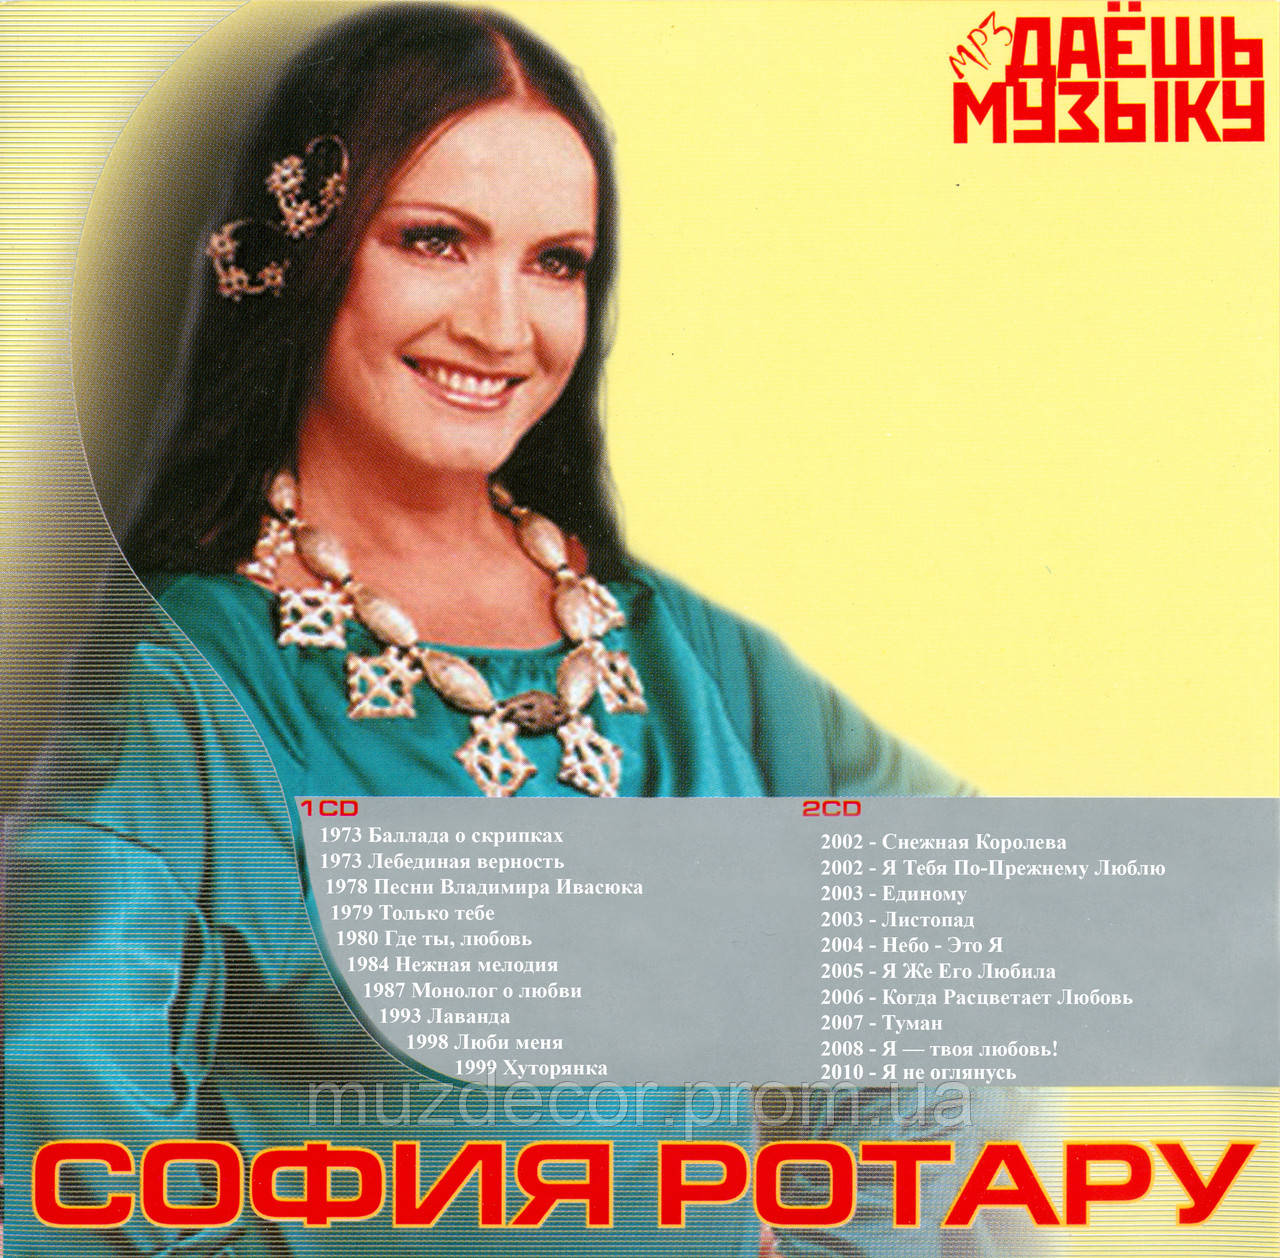 СОФИЯ РОТАРУ MP3 2CD, цена 120 грн., купить в Киеве — Prom.ua  (ID#1302737269)